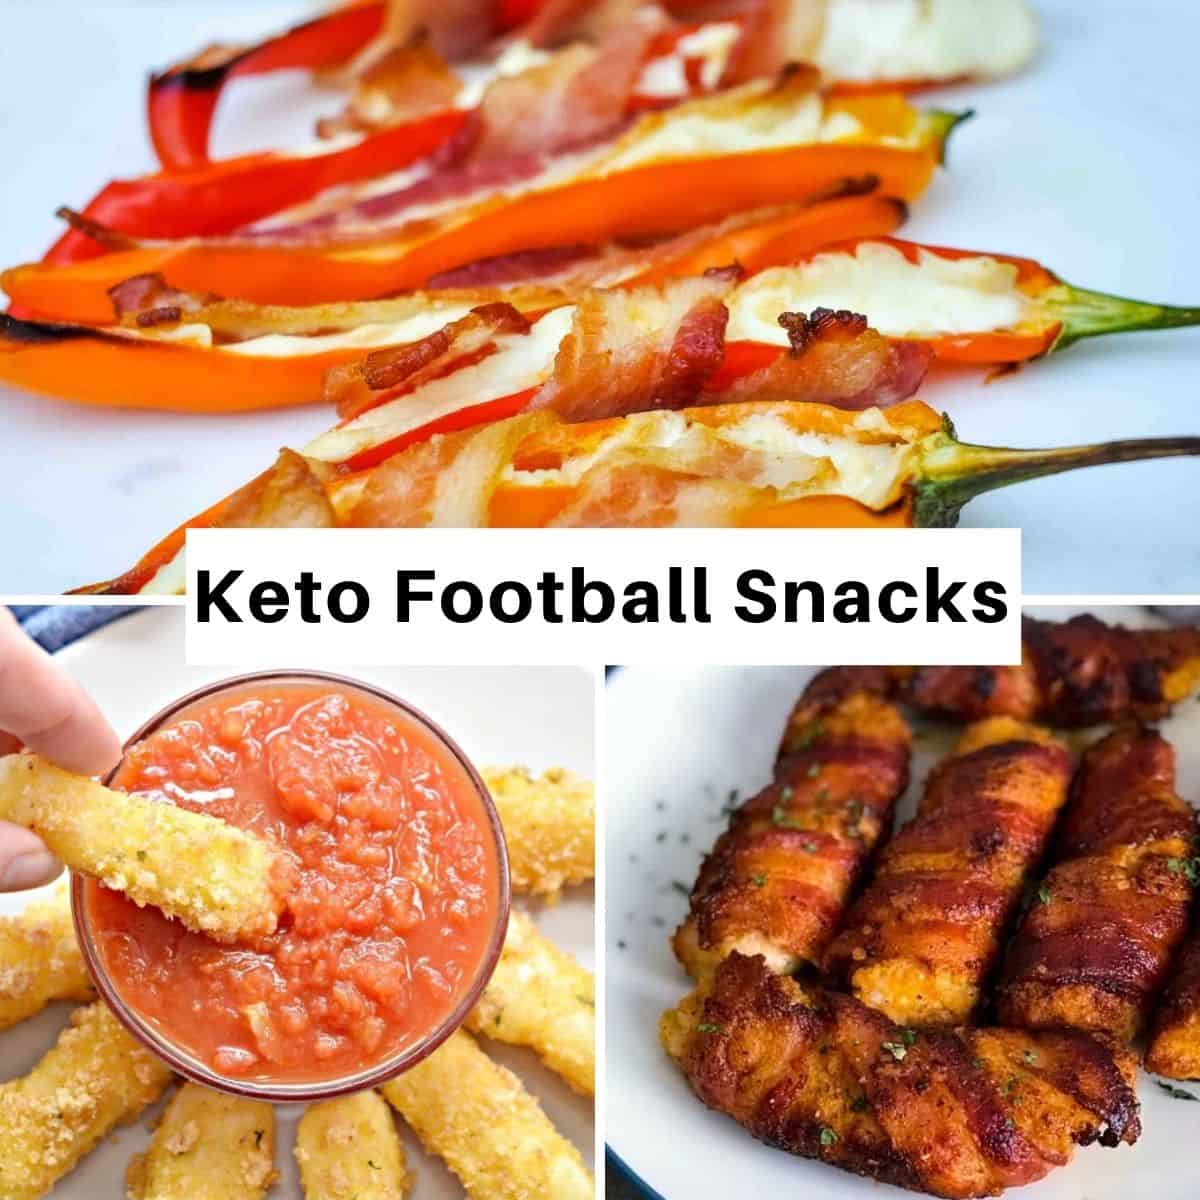 Keto football snacks - Keto Football Snacks